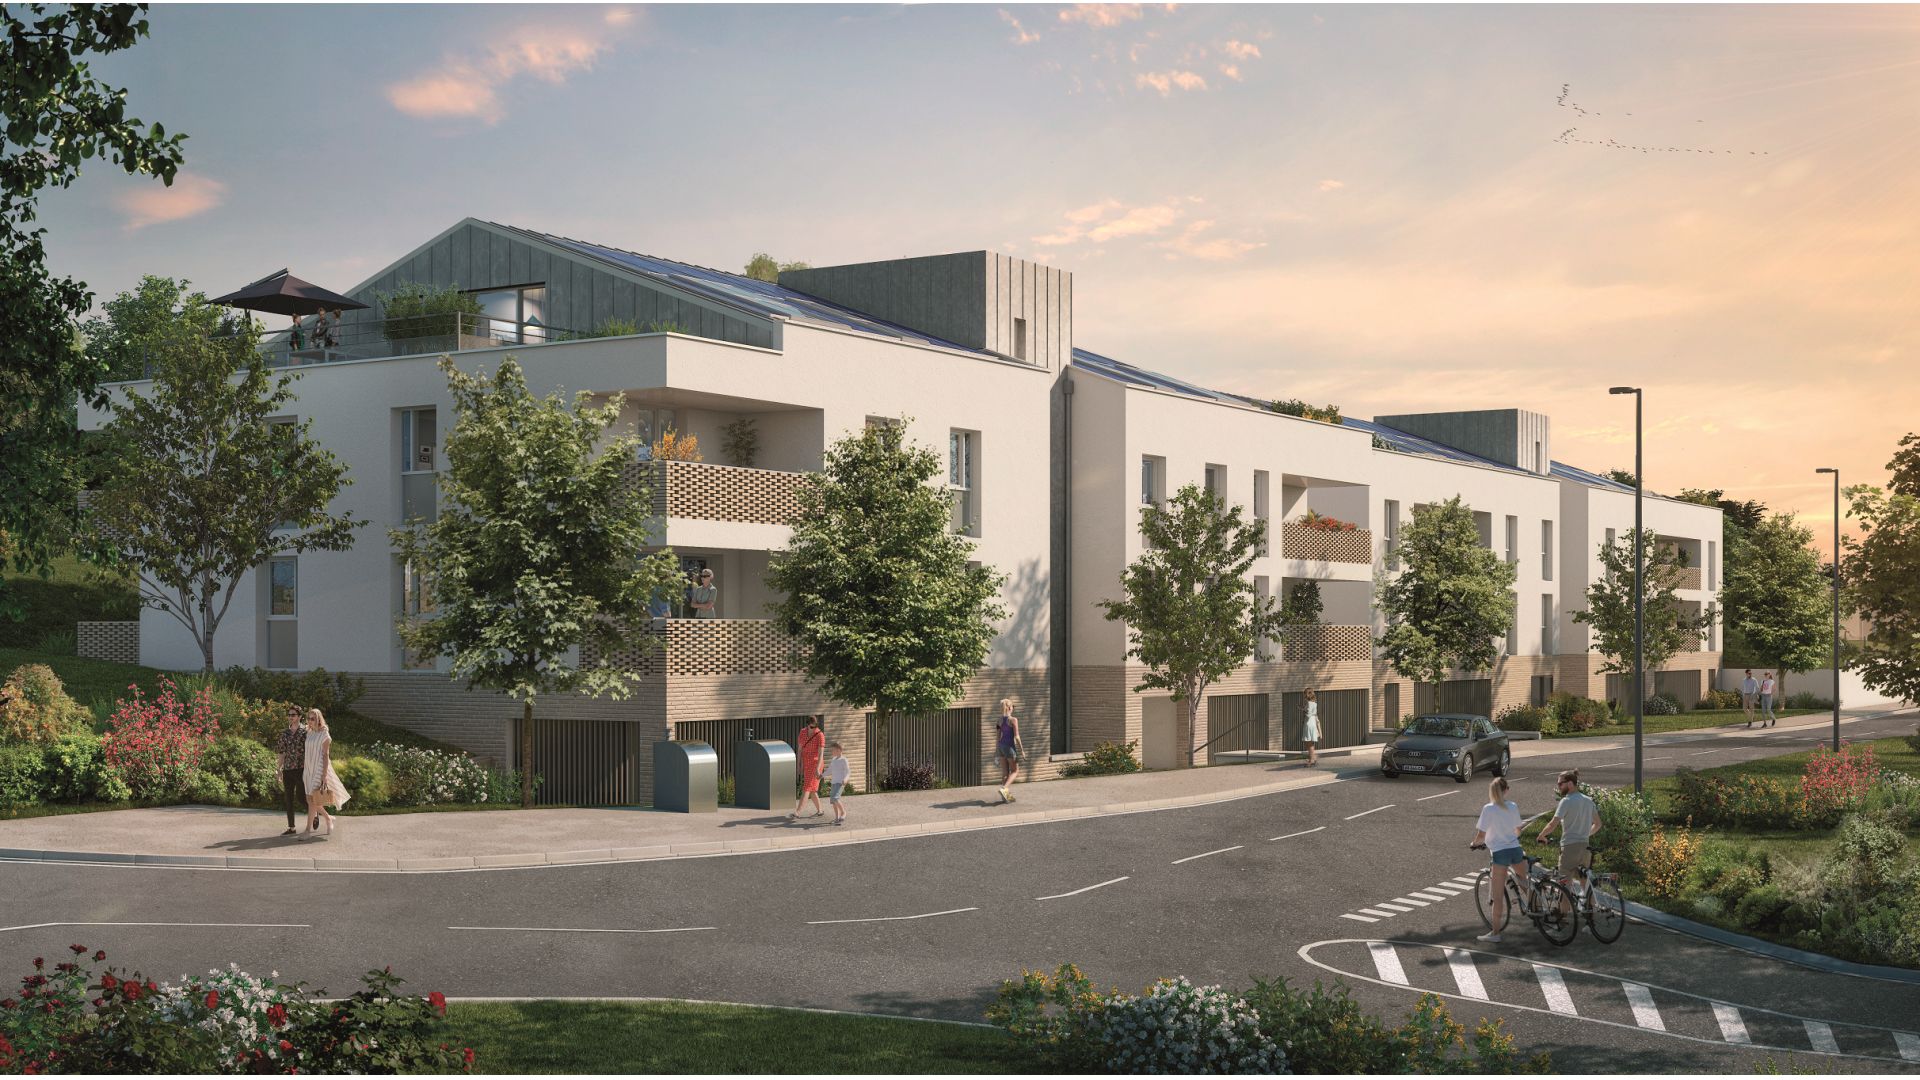 Greencity immobilier - achat appartements neufs du T2 au T5 - Résidence Le Solea - 31520 Ramonville-Saint-Agne